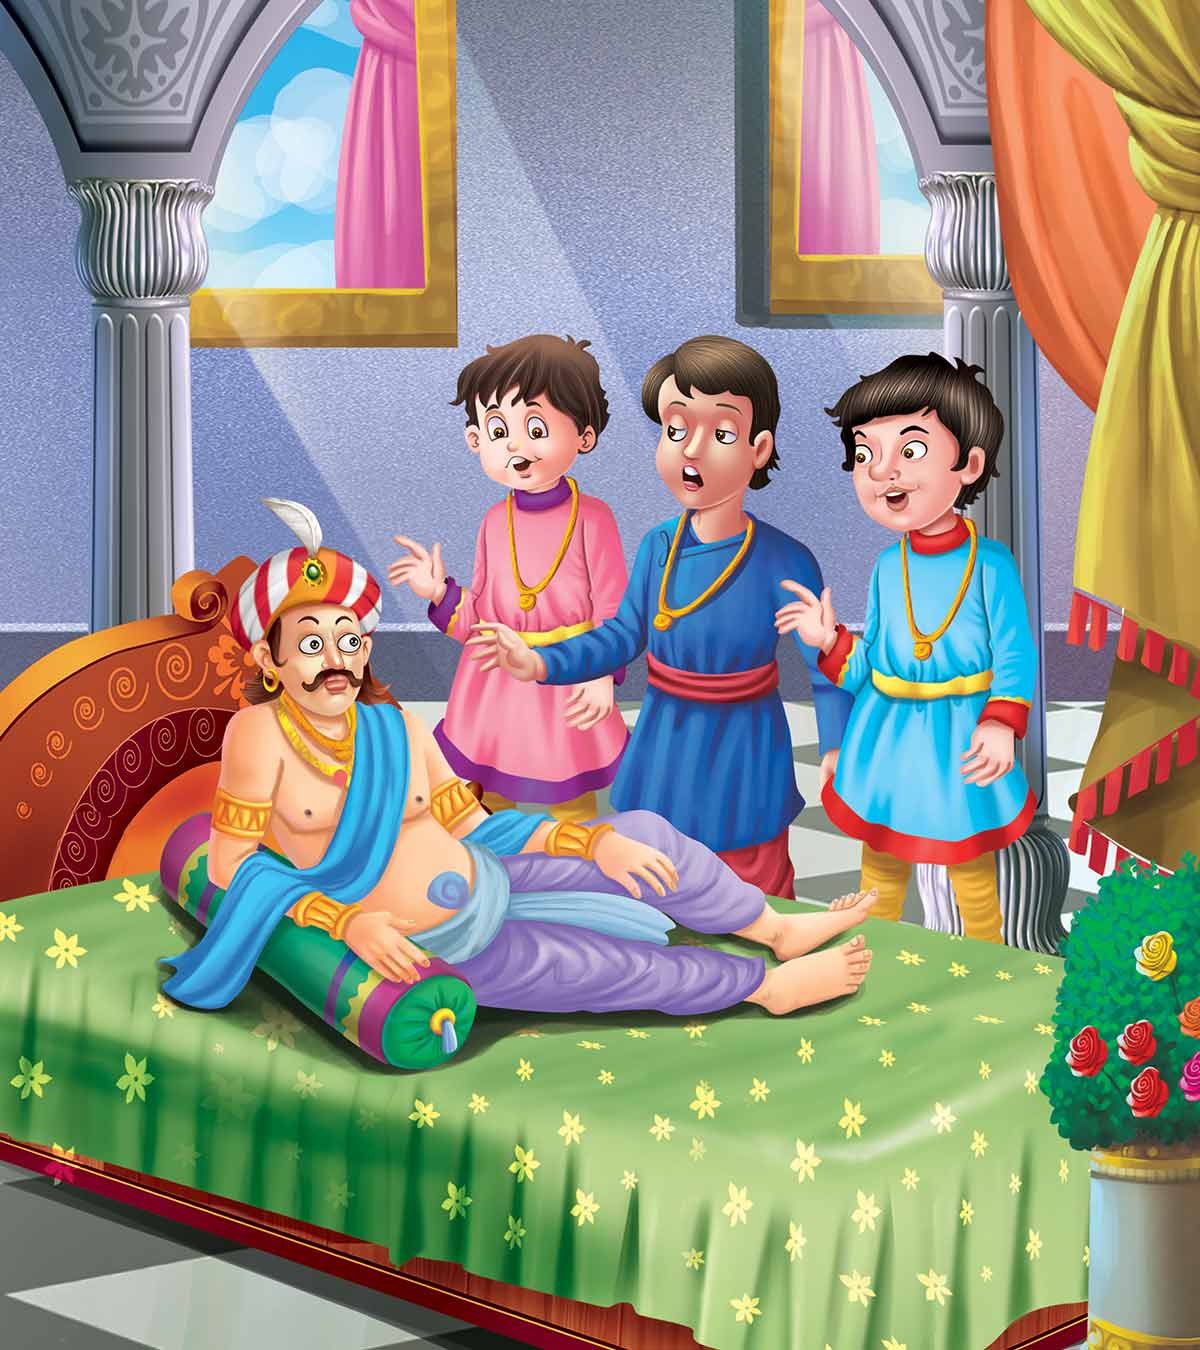 Tenali Rama的故事:国王的宫殿之梦